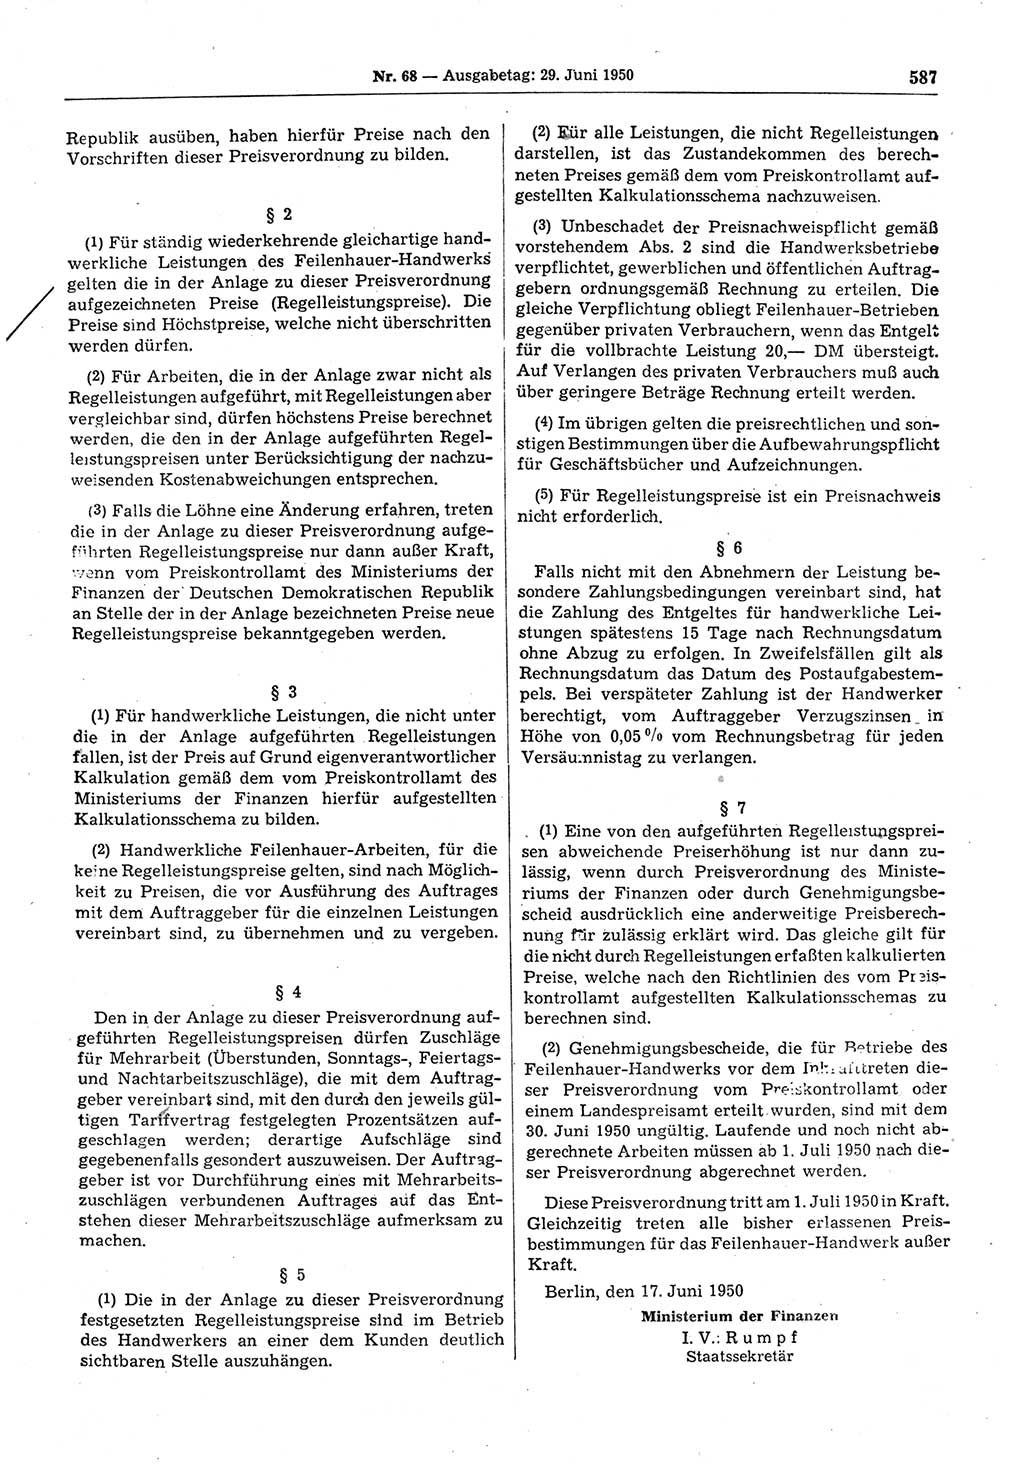 Gesetzblatt (GBl.) der Deutschen Demokratischen Republik (DDR) 1950, Seite 587 (GBl. DDR 1950, S. 587)